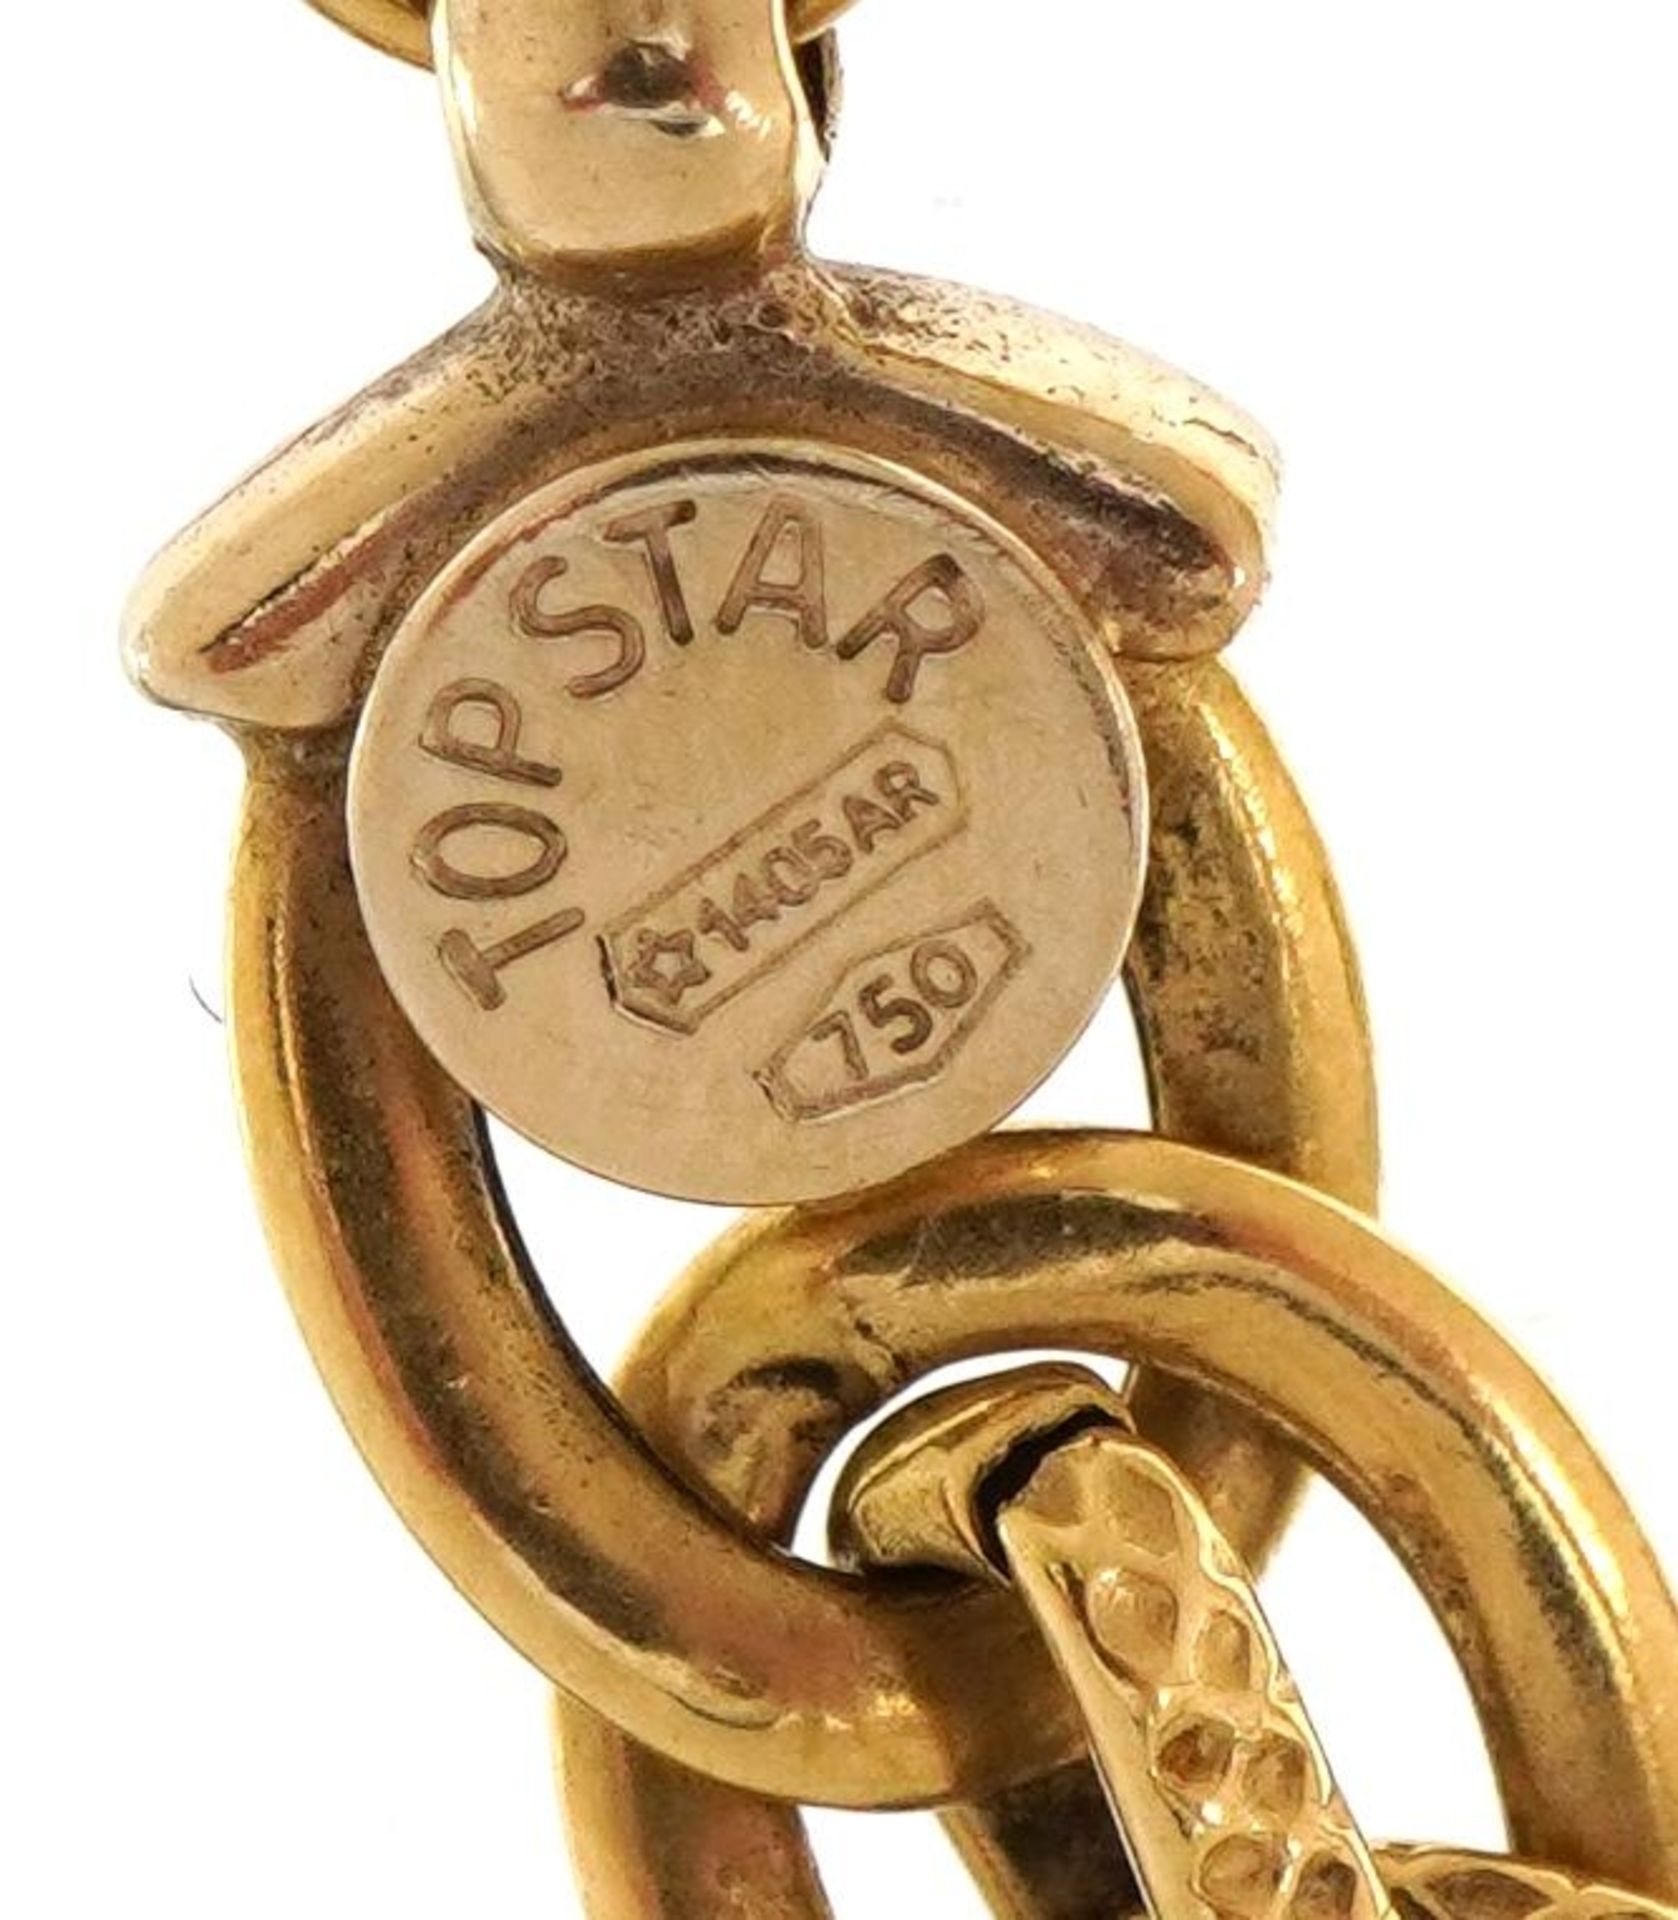 18ct gold multilink bracelet, 19.5cm in length, 6.2g - Image 3 of 4